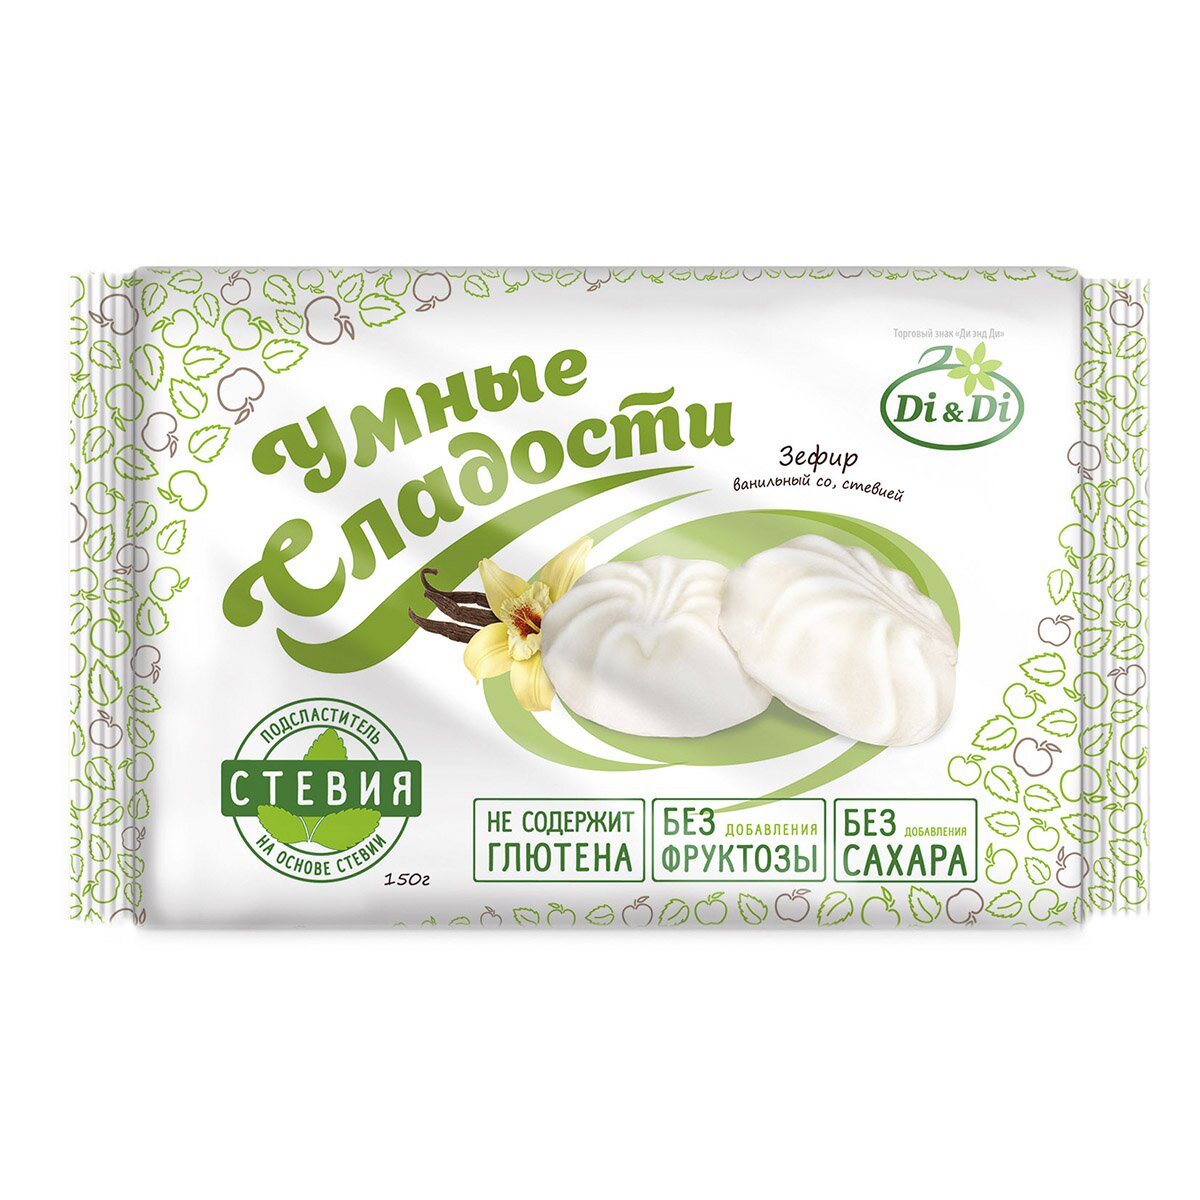 Зефир "Умные сладости" ванильный со стевией 150г/Ди энд Ди